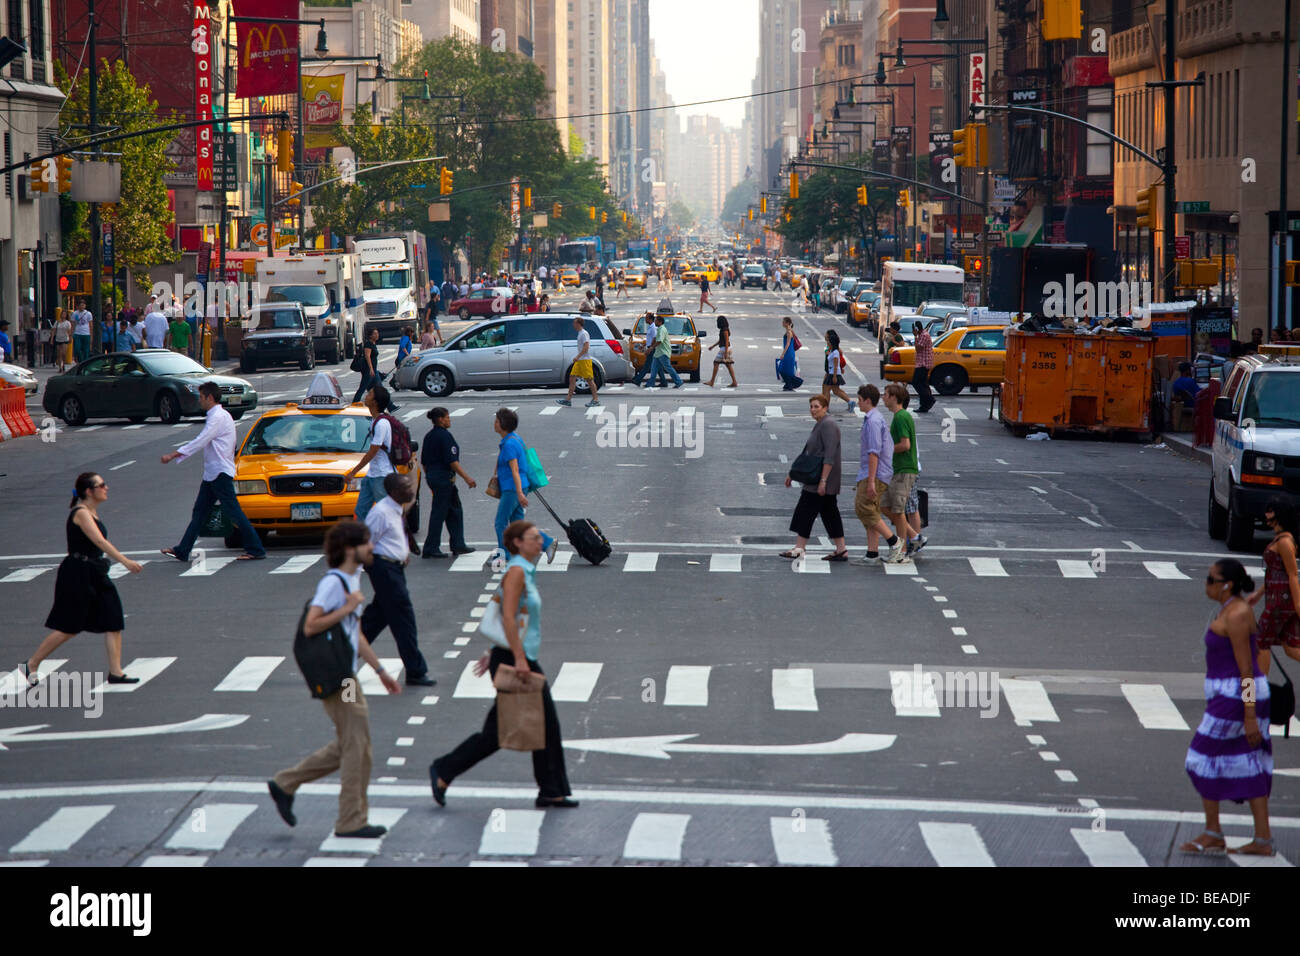 Crosswalks in Manhattan New York City Stock Photo